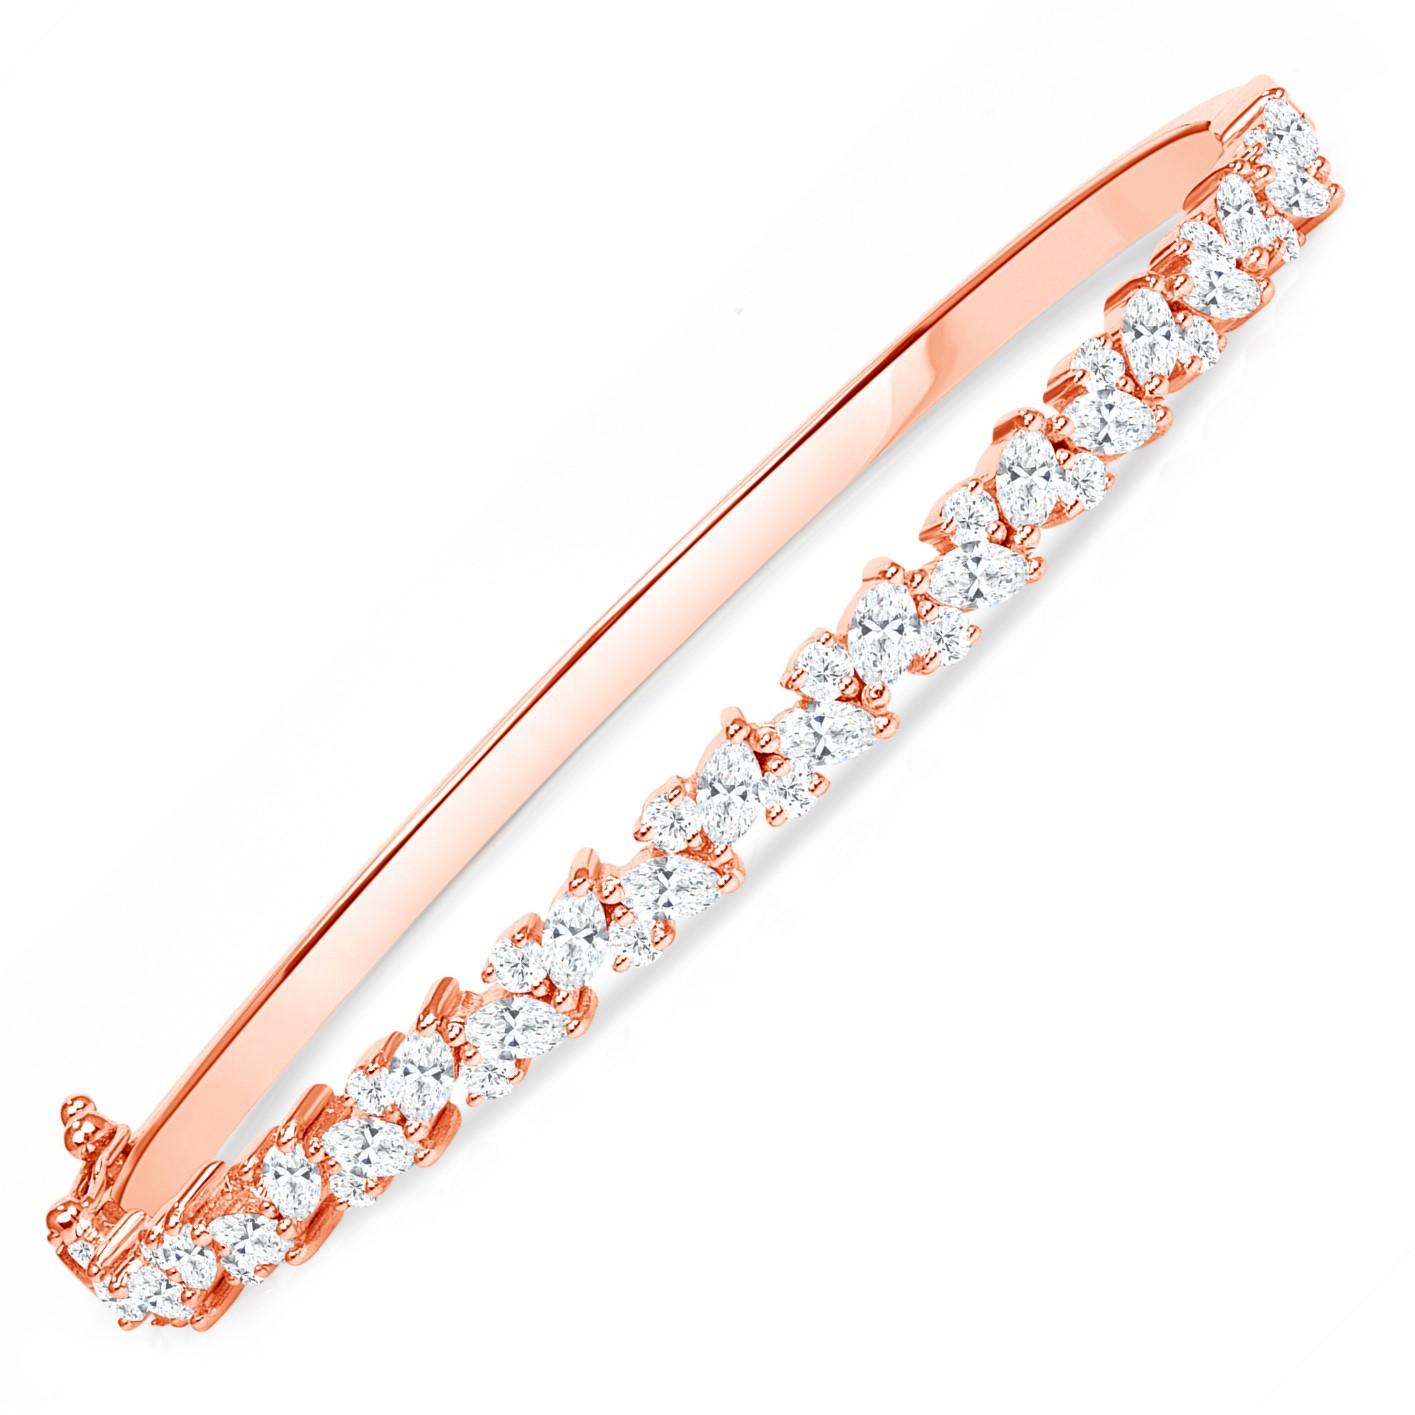 Bracelet massif en or rose 18K avec diamant marquise  Combiné avec des diamants ronds

Bracelet solide avec une rangée de diamants brillants, ce bangle au design de vigne est un bijou intemporel et éternellement élégant. La combinaison de diamants